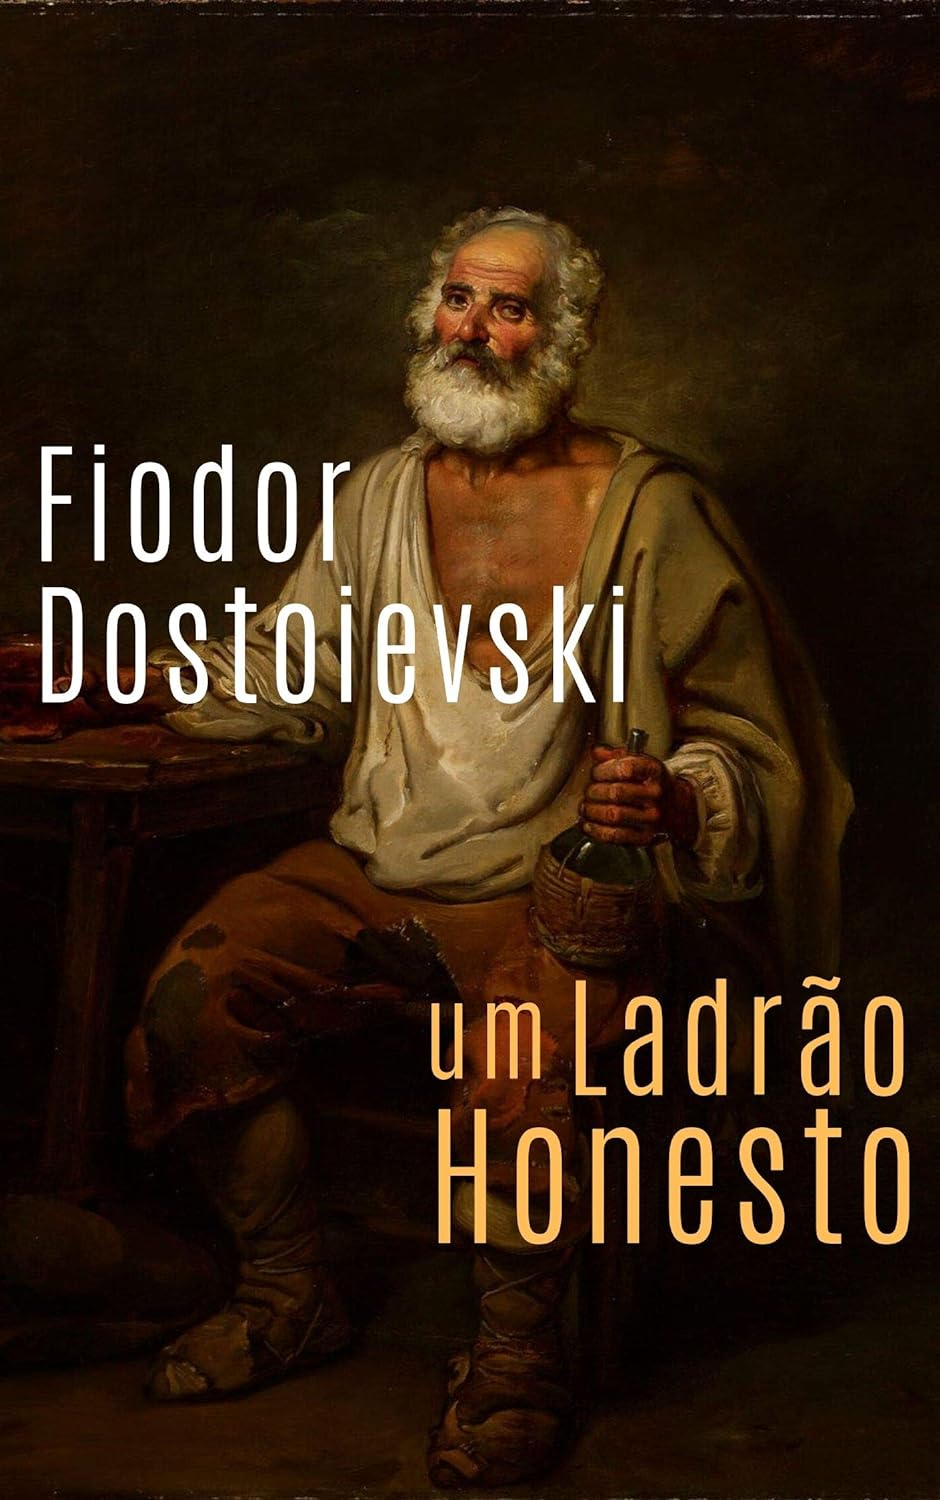 Um Ladrão Honesto - Fiodor Dostoievski